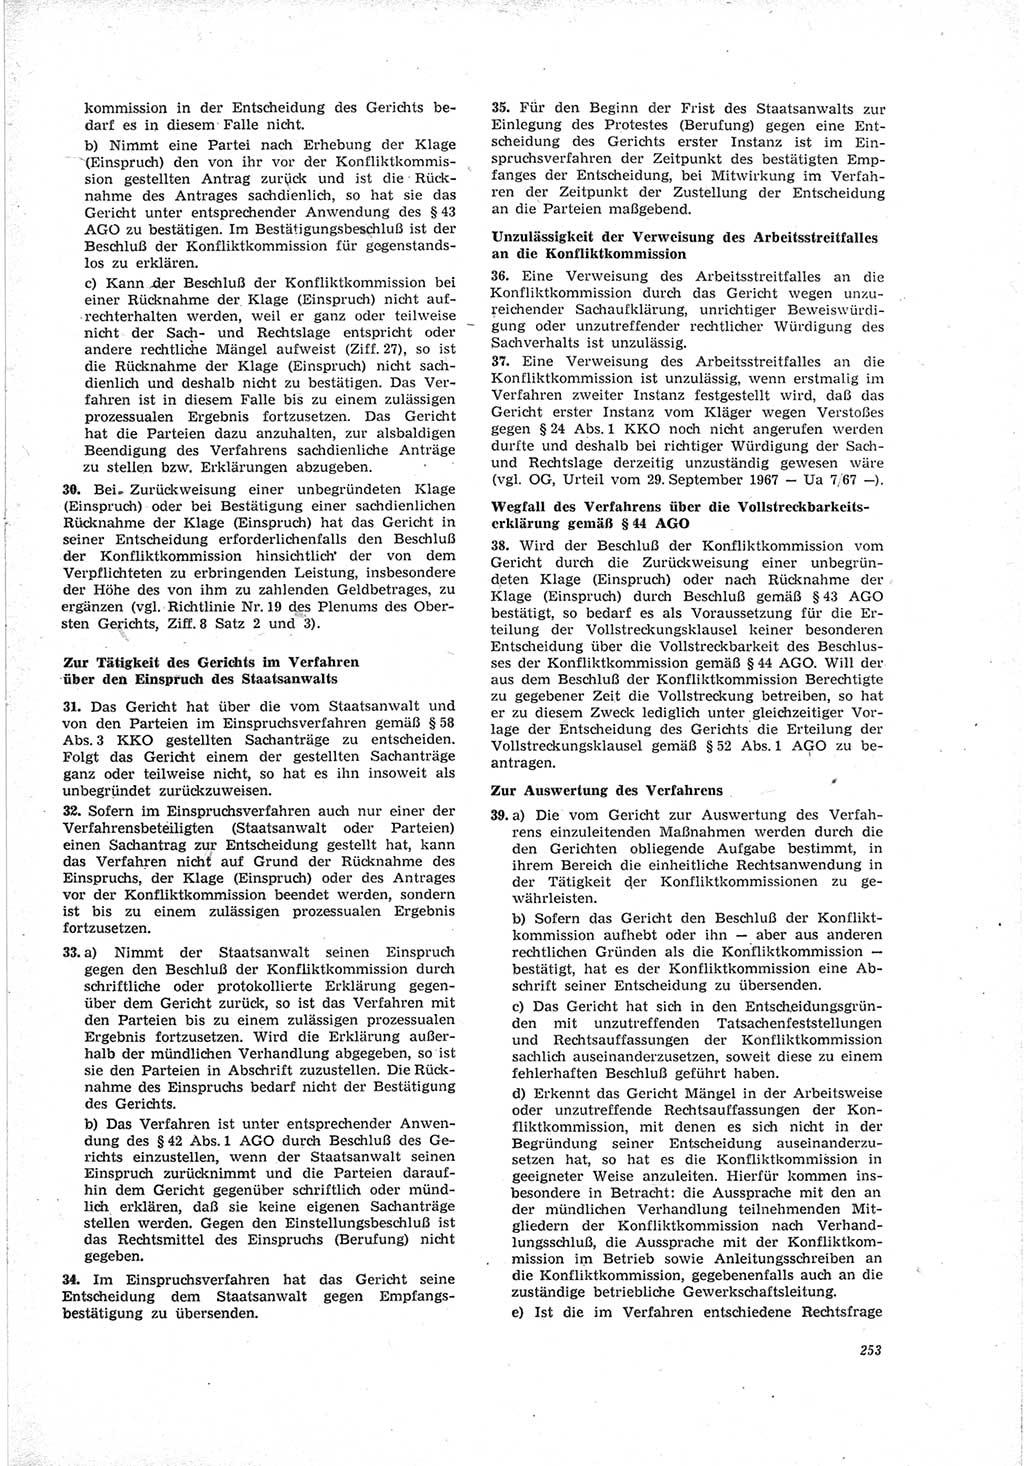 Neue Justiz (NJ), Zeitschrift für Recht und Rechtswissenschaft [Deutsche Demokratische Republik (DDR)], 23. Jahrgang 1969, Seite 253 (NJ DDR 1969, S. 253)